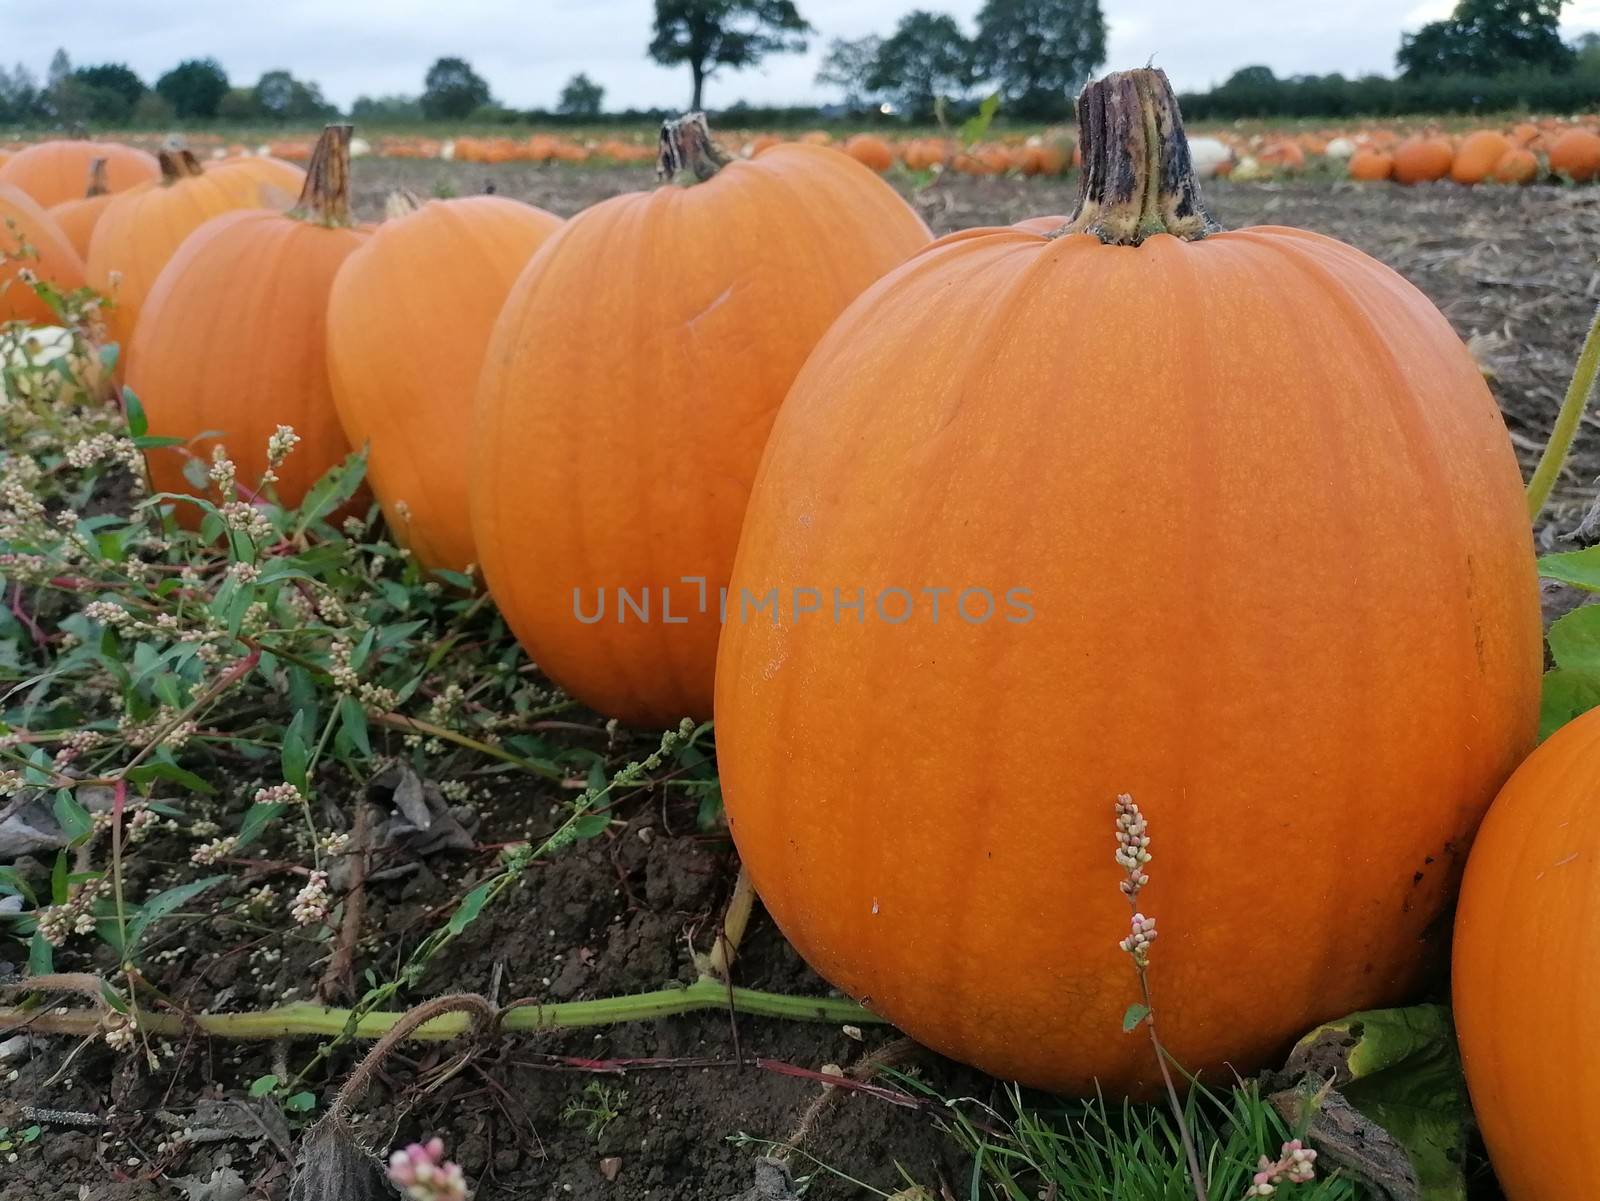 Big orange pumpkin growing in a field in norfolk uk ready for halloween